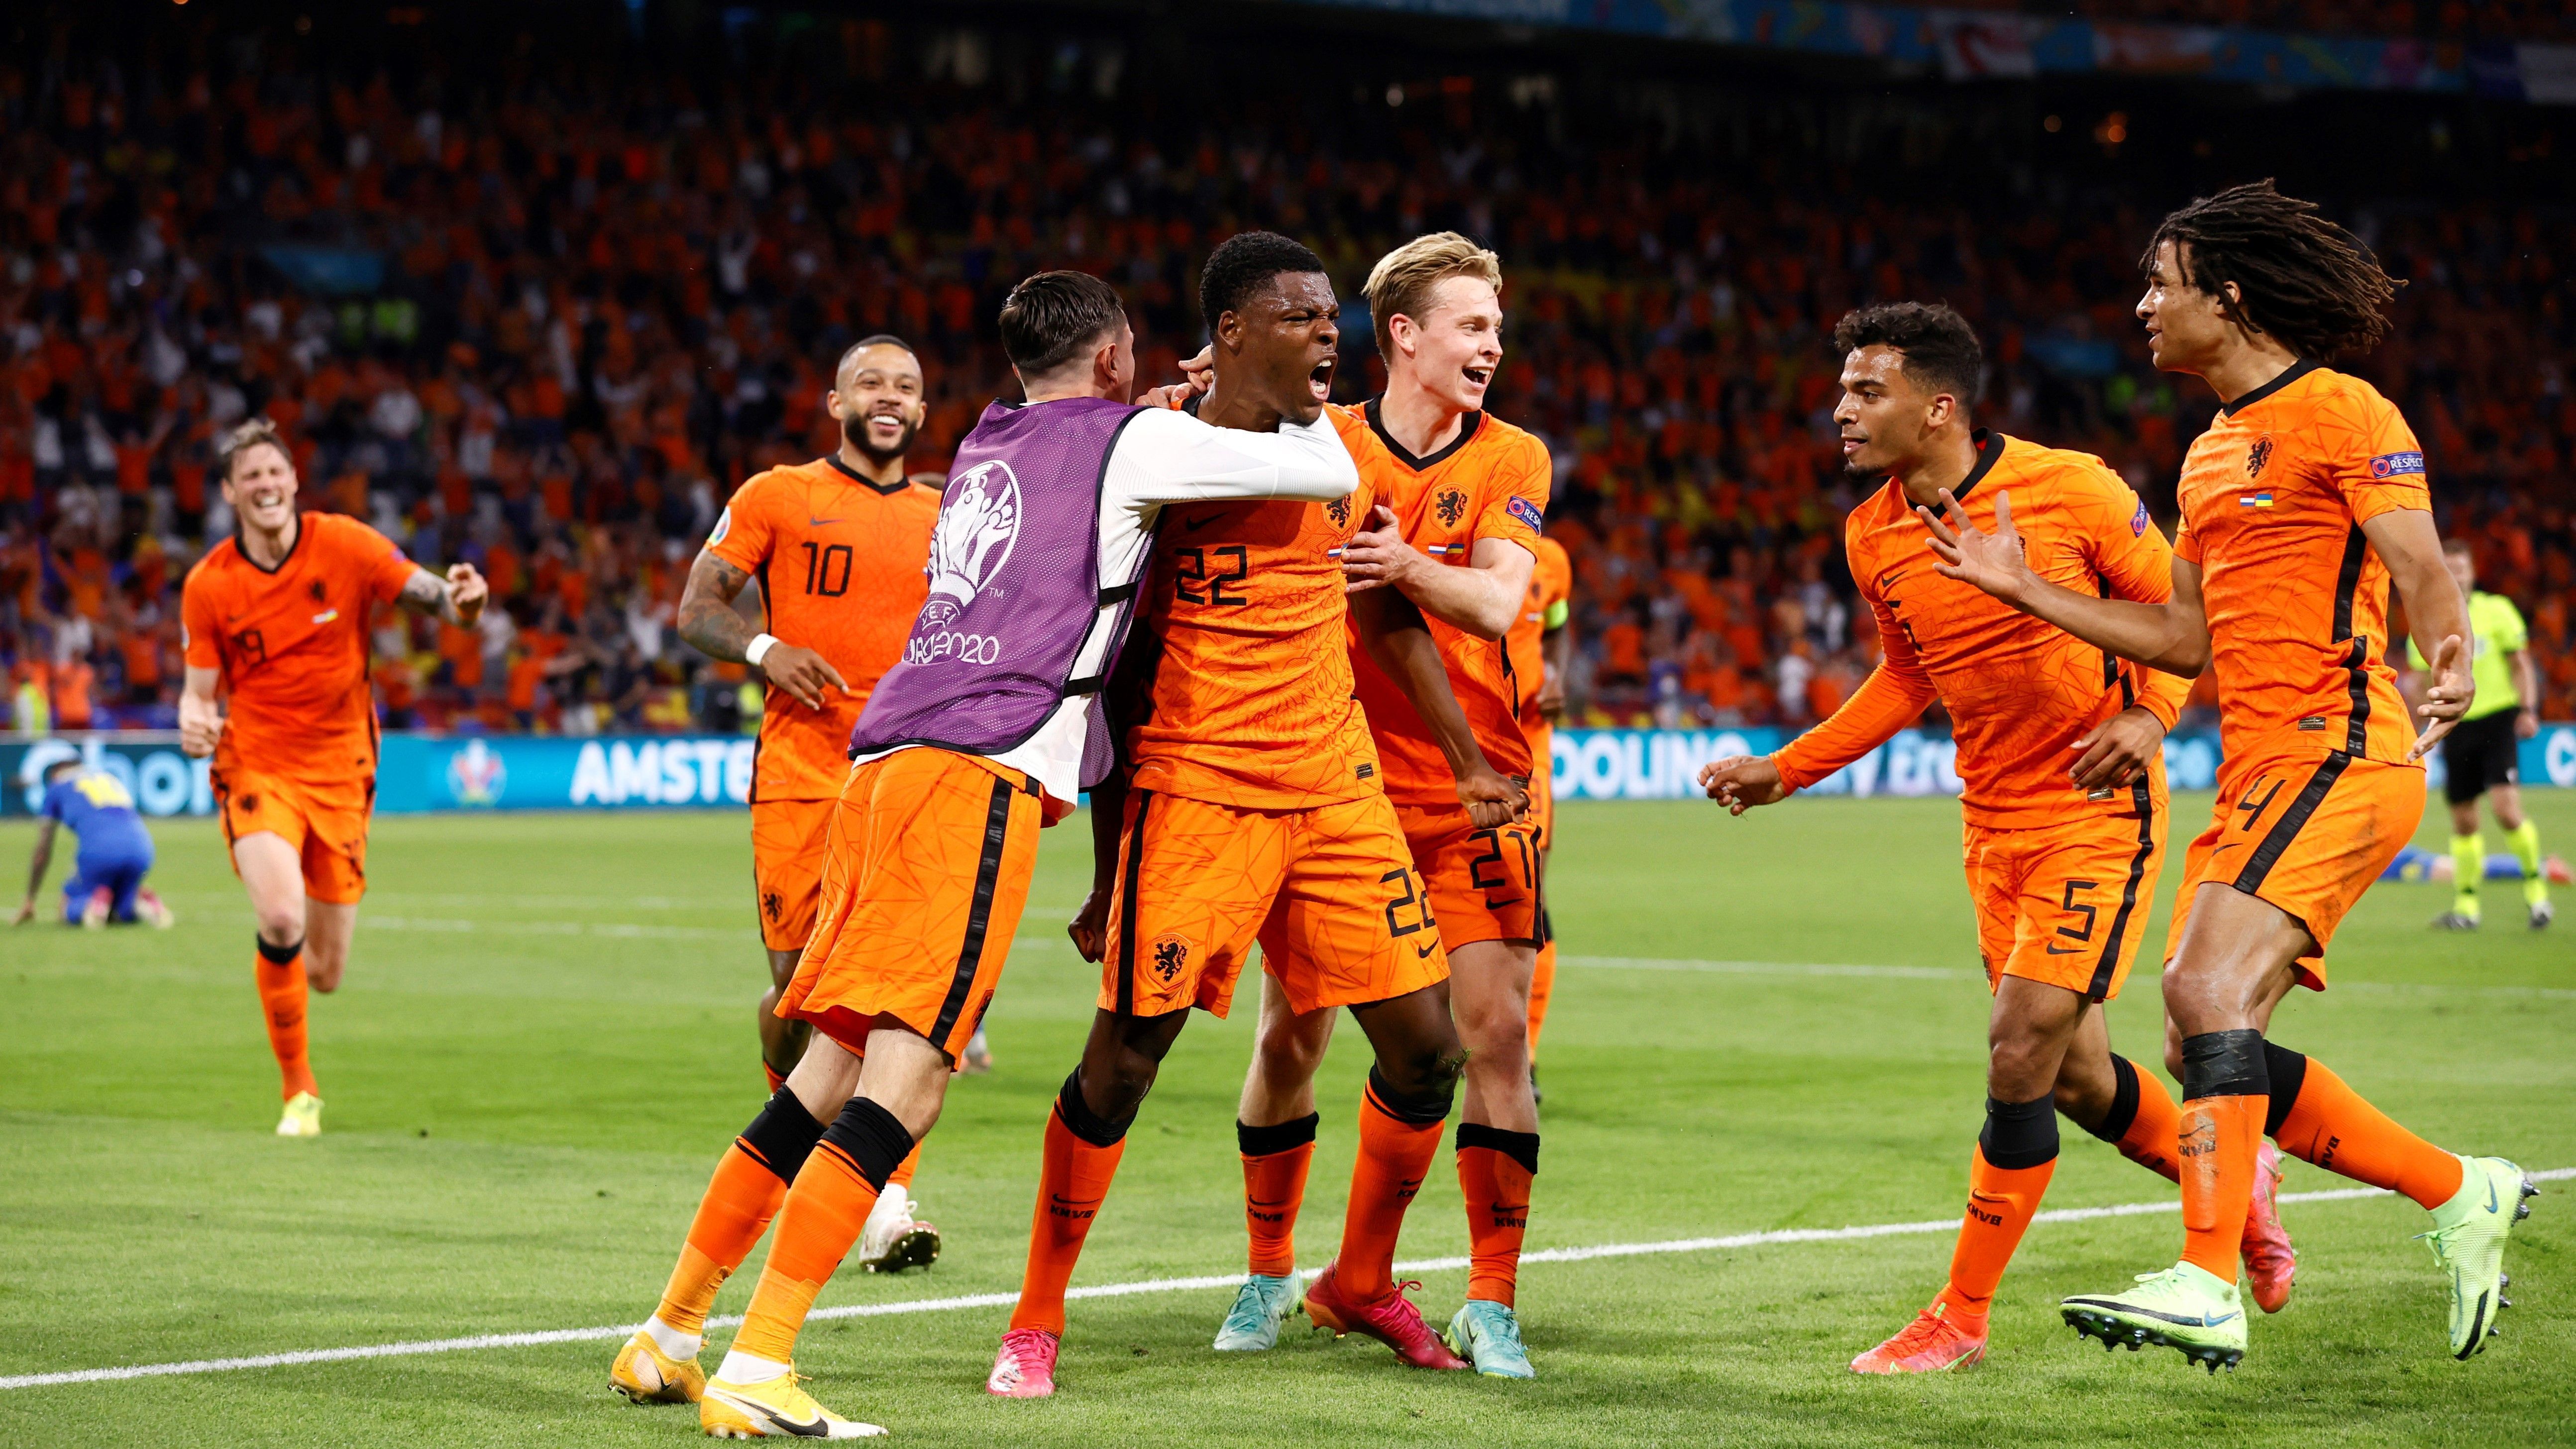 
                <strong>Niederlande</strong><br>
                Die Niederlande fahren nach Katar. Das Team von Bondscoach Louis van Gaal hat sich durch ein 2:0 gegen Norwegen für die Weltmeisterschaft 2022 qualifiziert. Van Gaal sah das Spiel von einer Loge im Stadion aus, nachdem er sich zuvor bei einem Fahrradsturz an der Hüfte verletzt hatte. Es wird die insgesamt elfte Teilnahme an einer WM-Endrunde für die Nationalmannschaft von Oranje. 
              